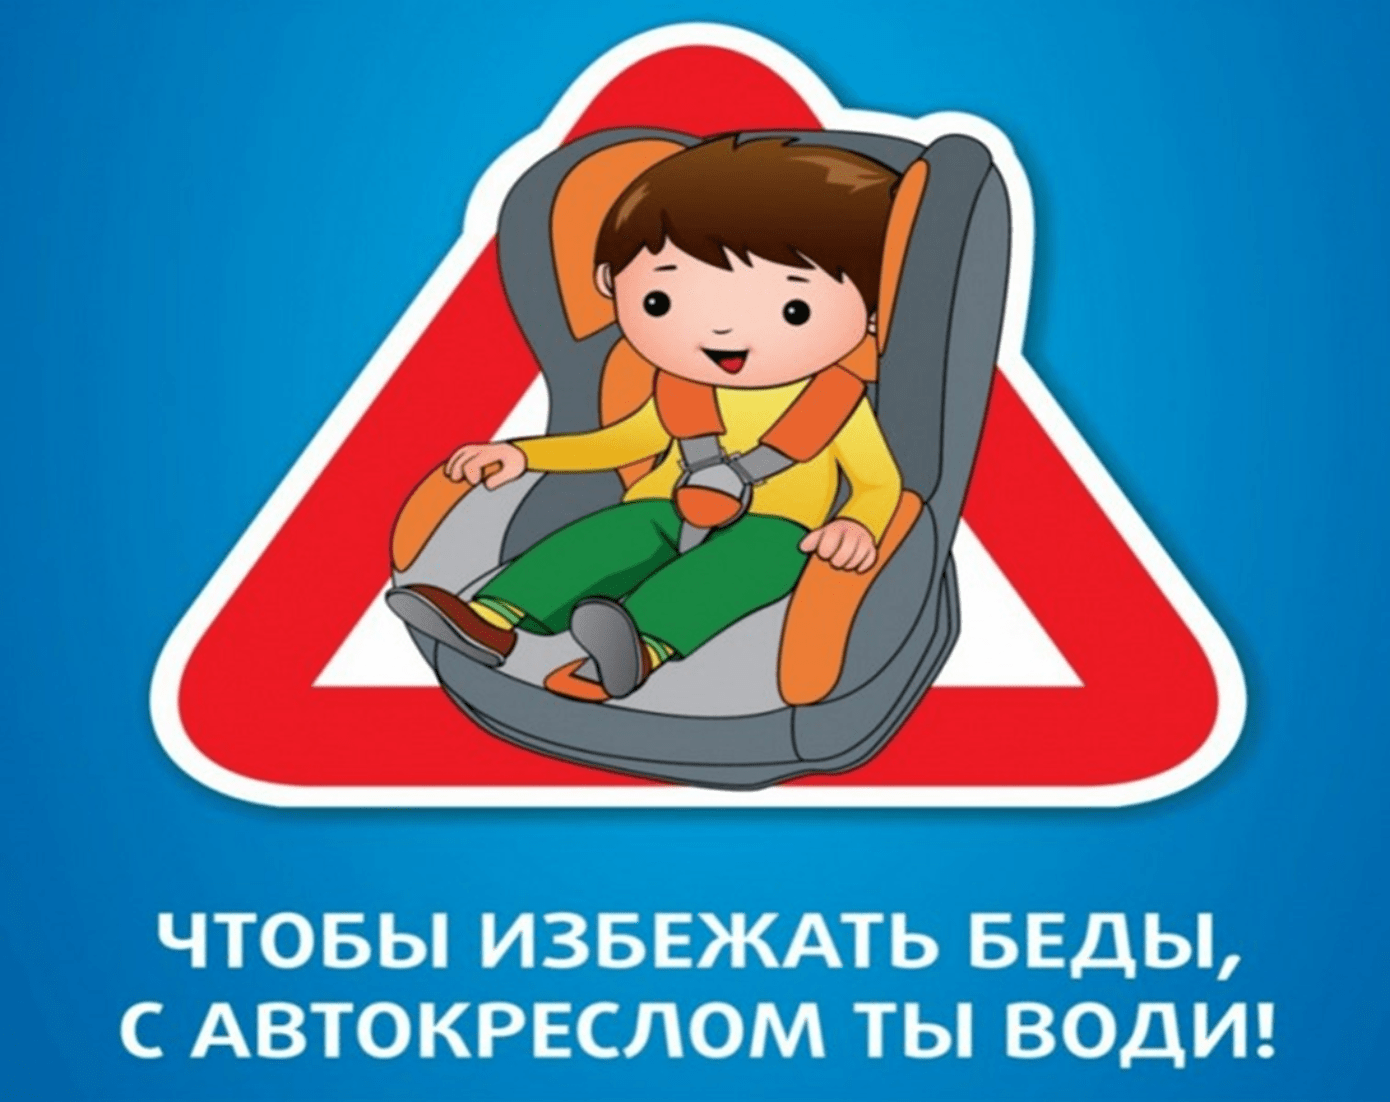 перевозка детей в автомобиле без кресла штраф и статья